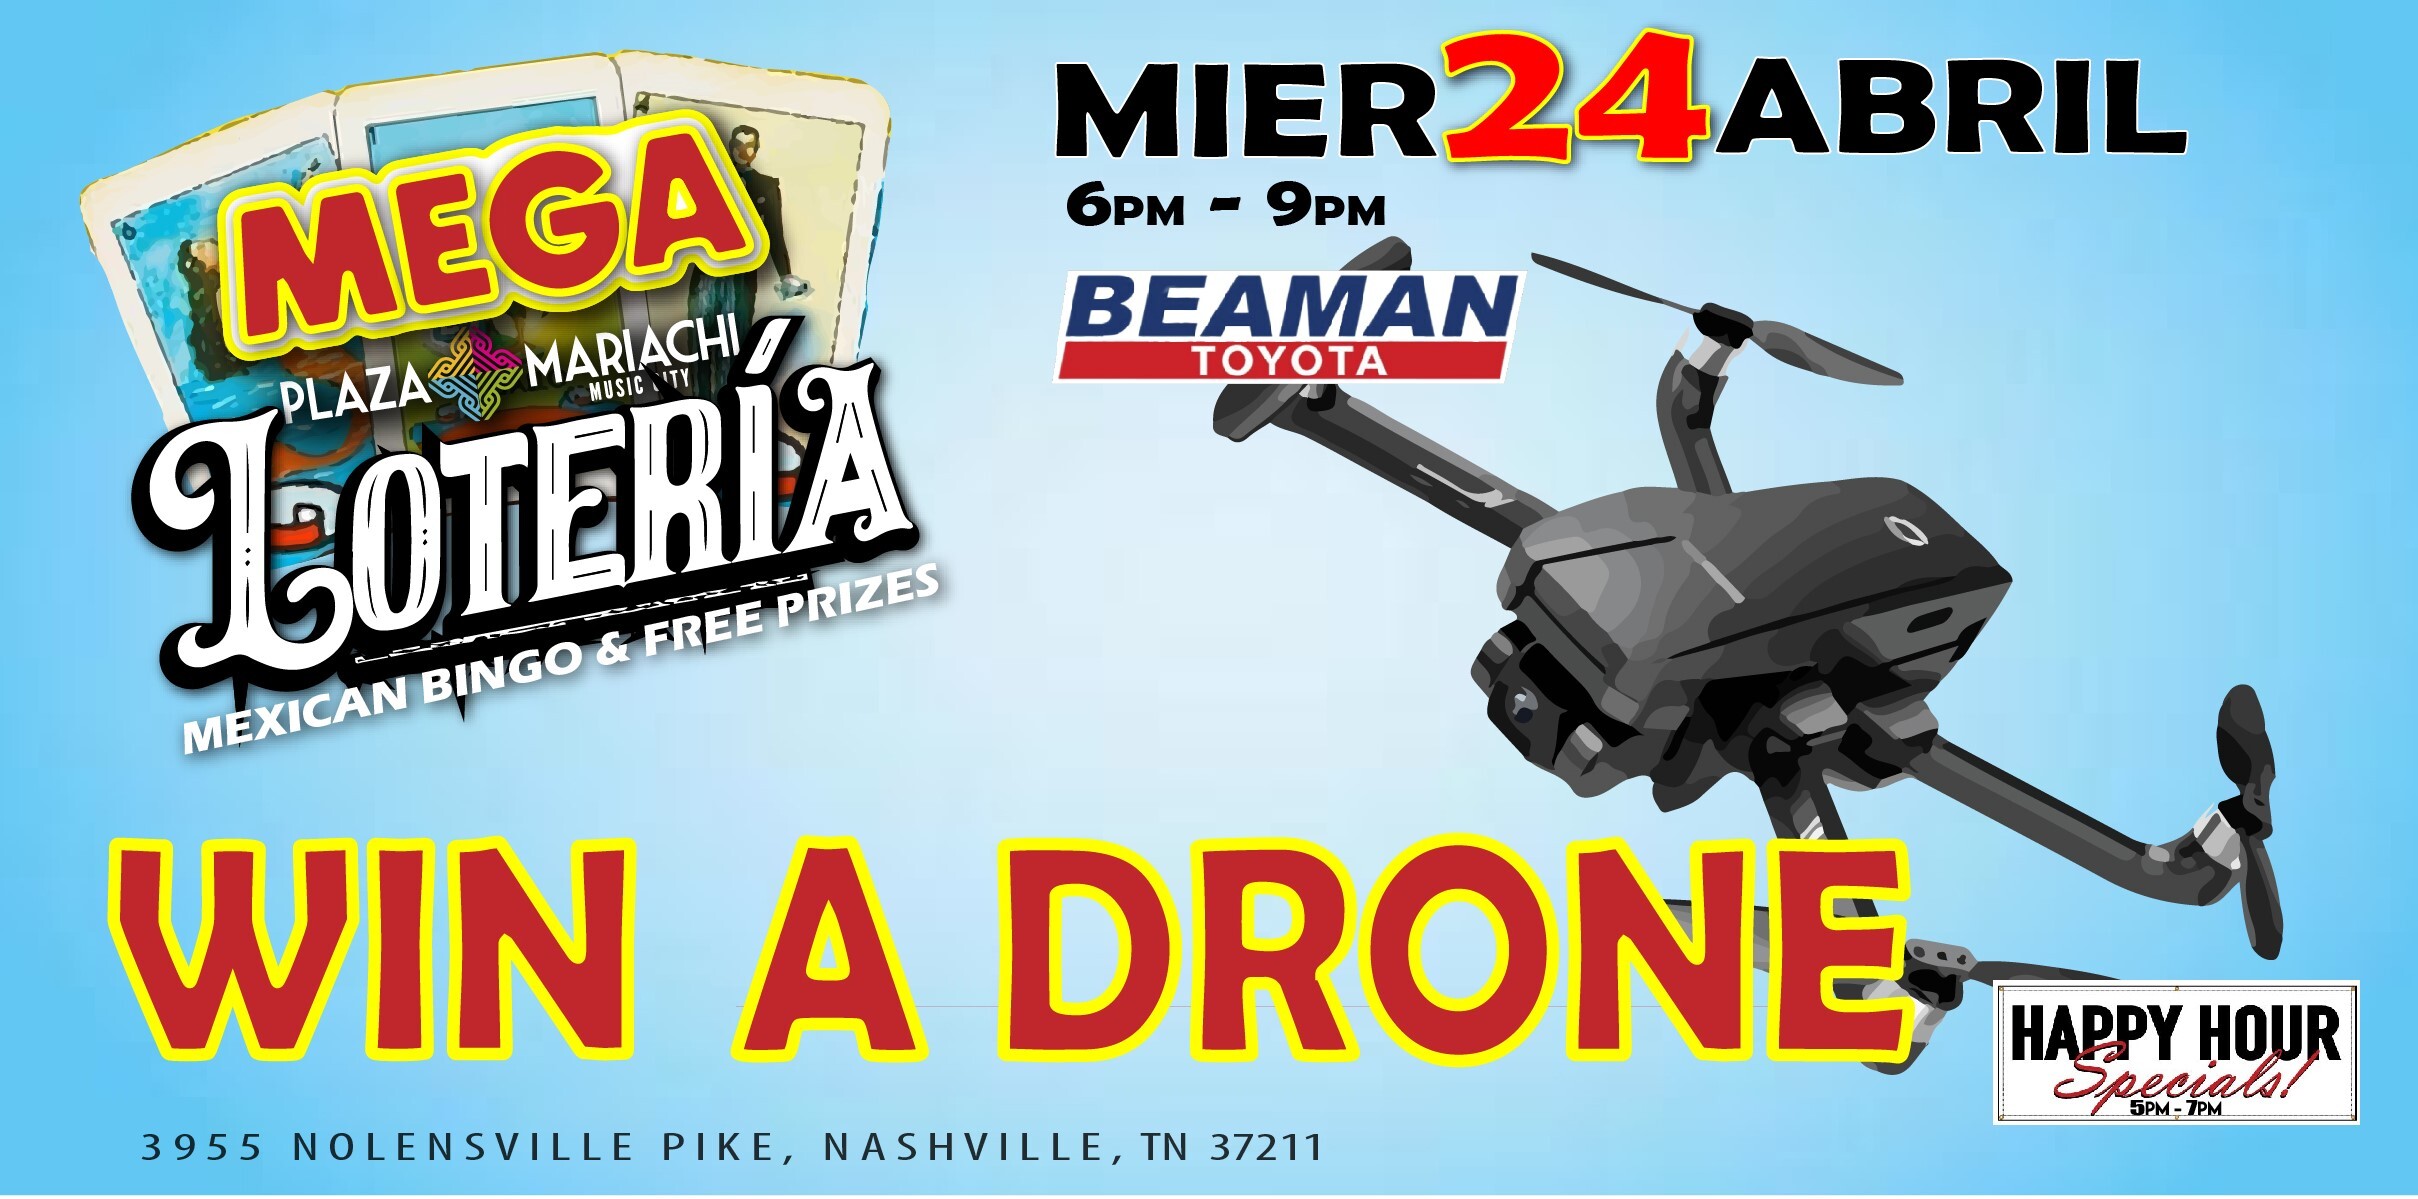 Loteria win a drone!